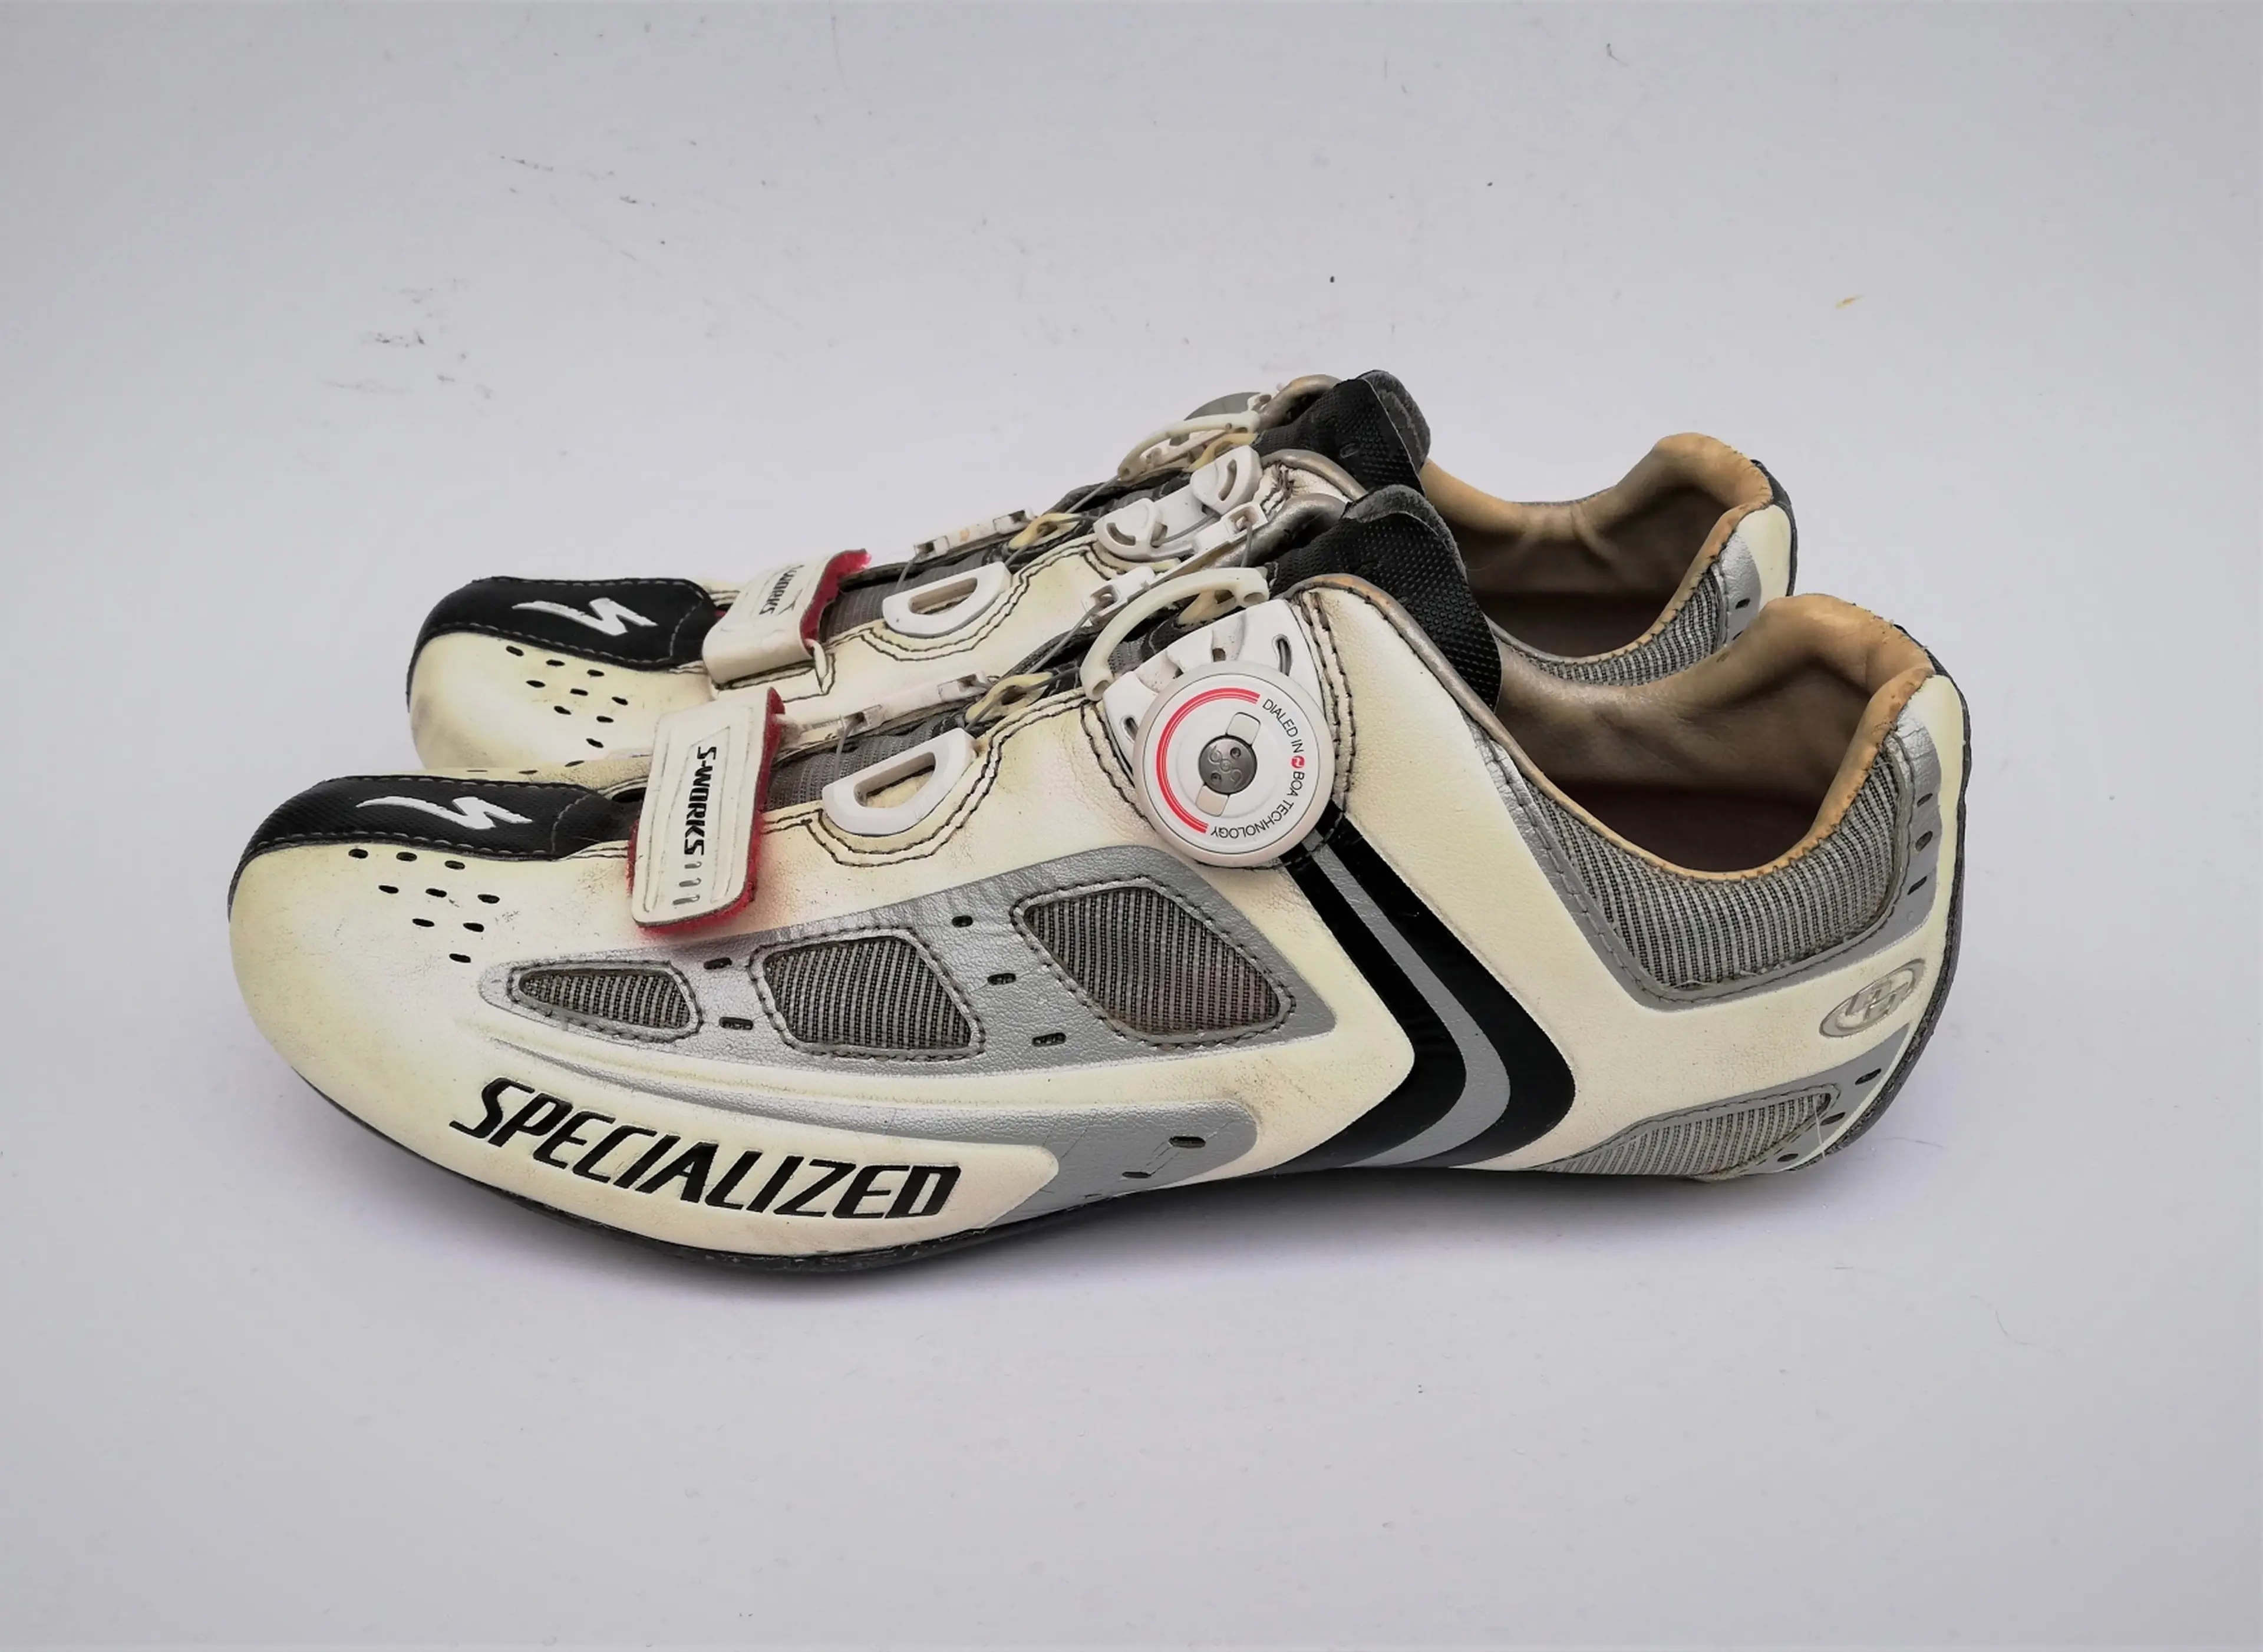 2. Pantofi Specialized S-Works